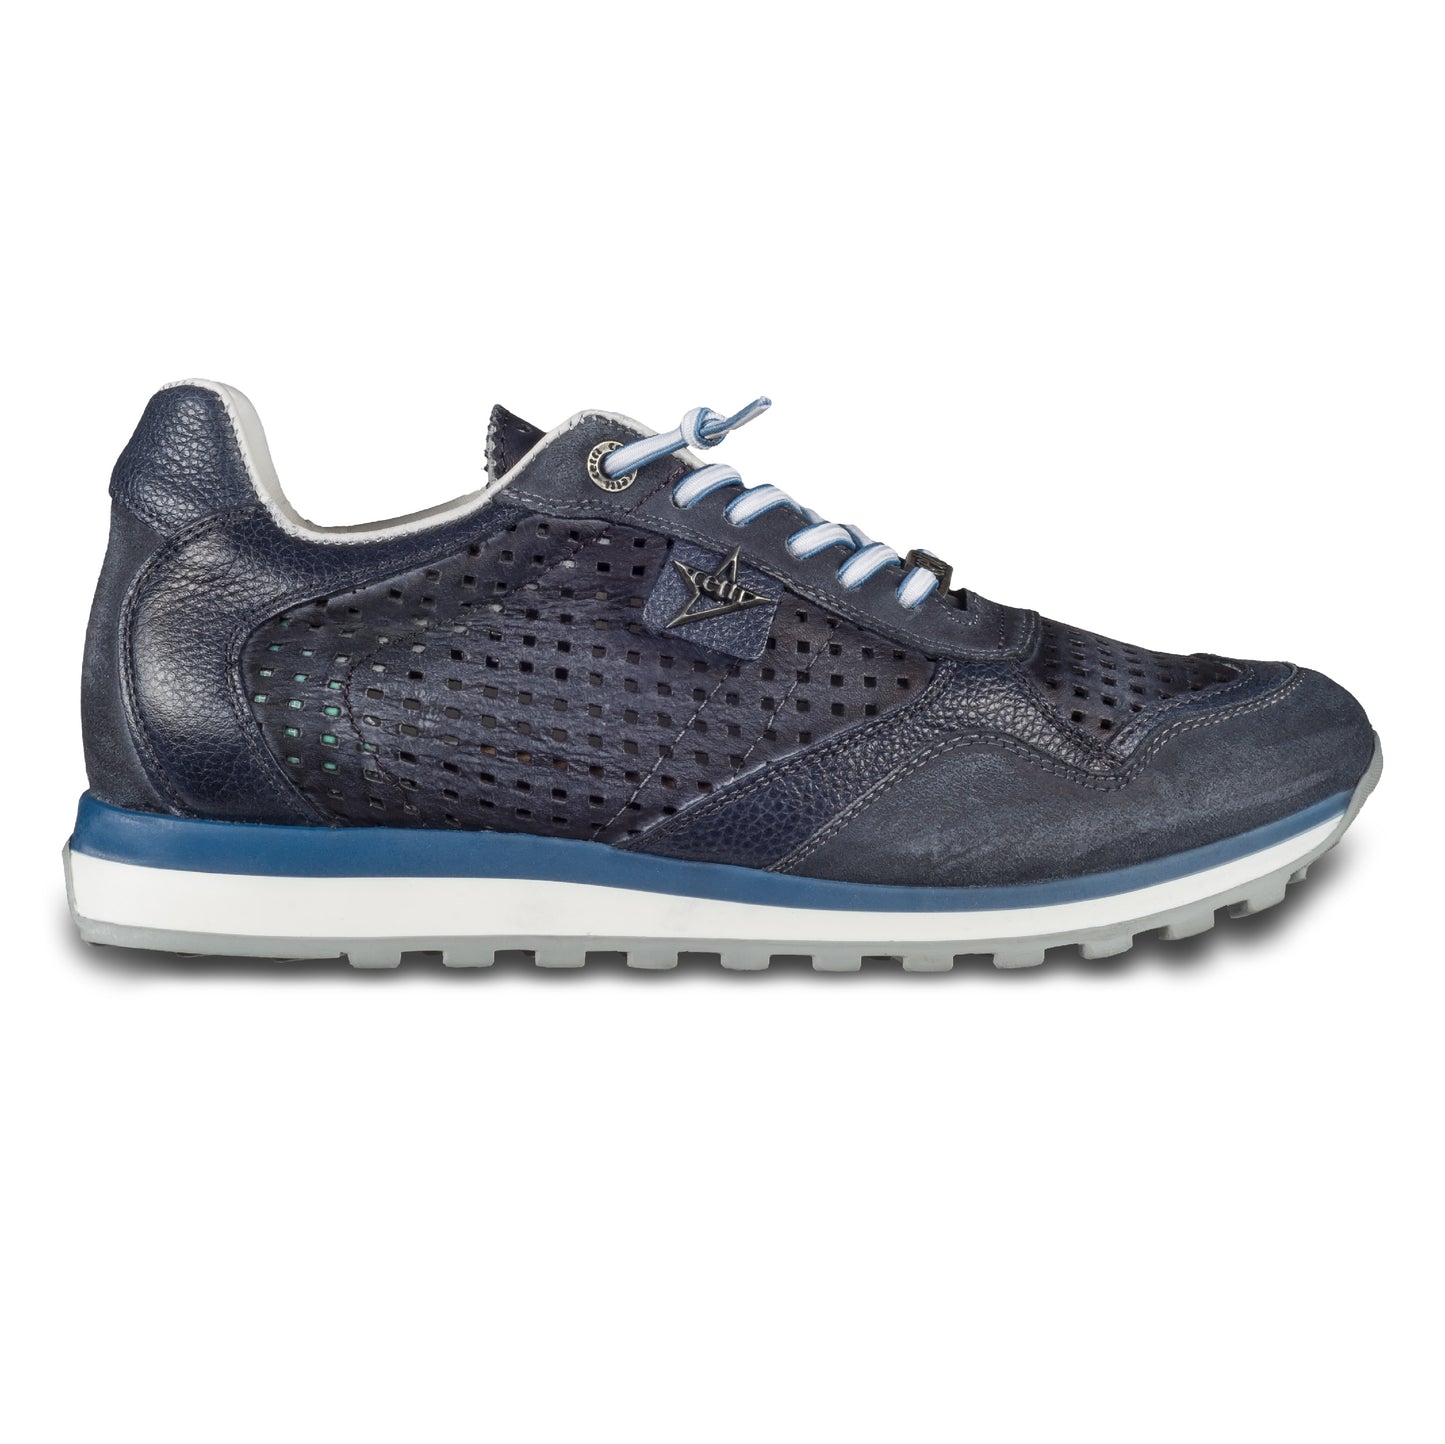 CETTI Herren Leder Sneaker, Modell „C848“ in dunkel blau / grau (used tin antracite), Made in Spain. Ansicht der Ferse und Sohlenunterseite. Ansicht der Außenseite rechter Schuh. 